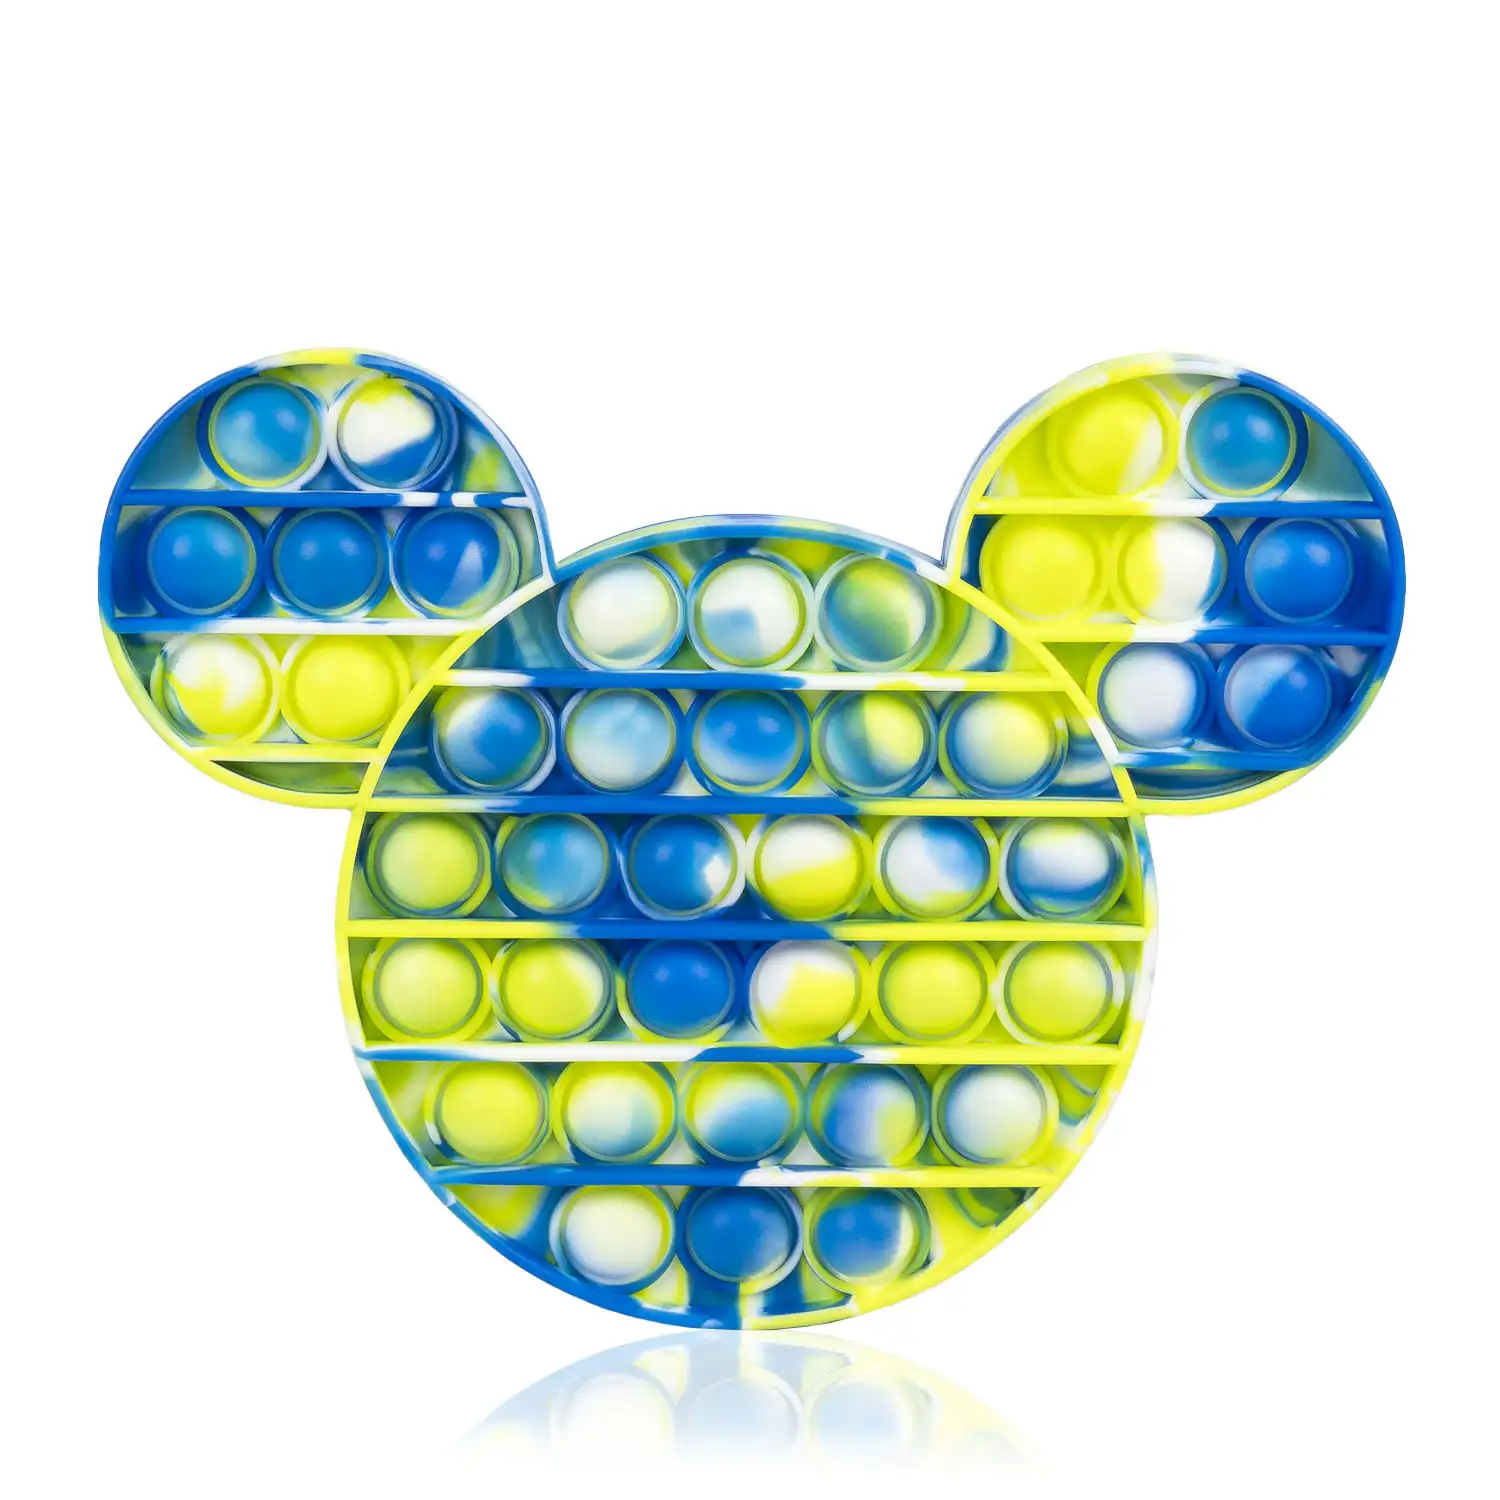 Bubble Pop It juguete sensitivo desestresante, burbujas de silicona para apretar y pulsar. Diseño ratoncito multicolor.